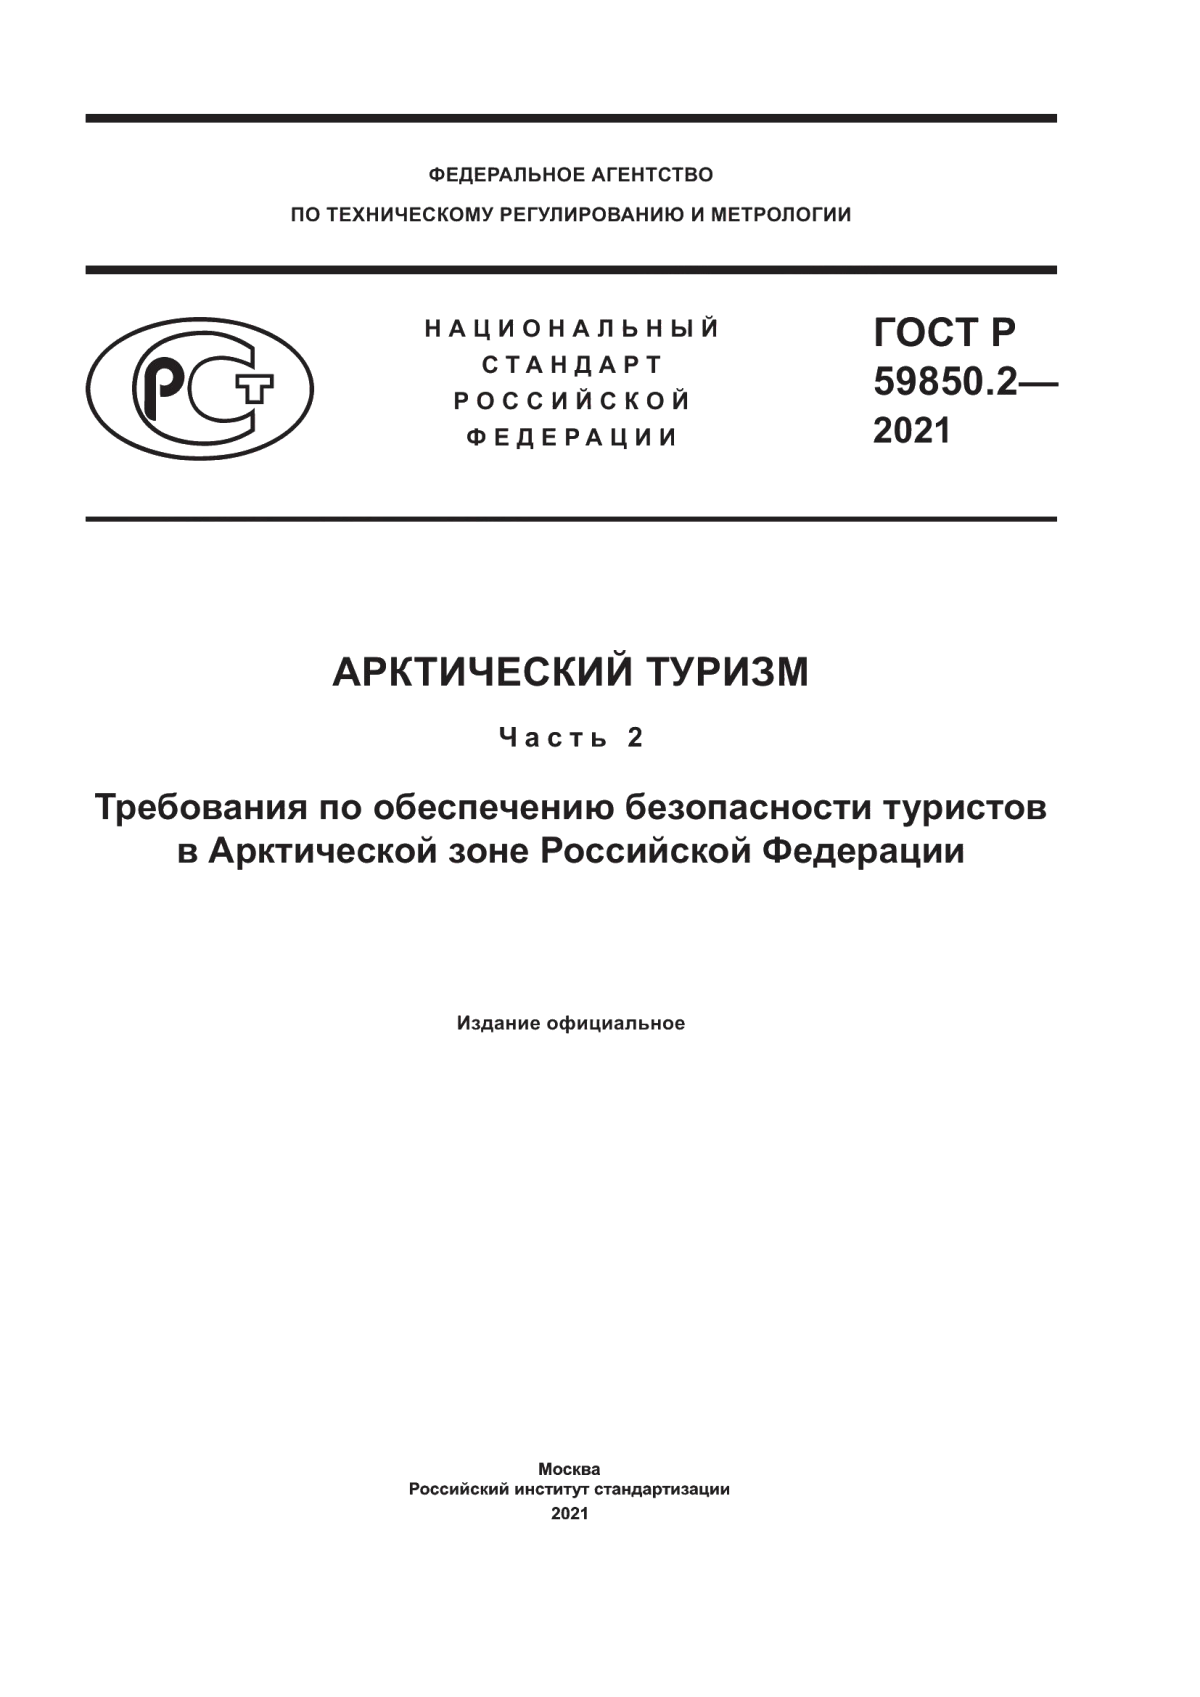 ГОСТ Р 59850.2-2021 Арктический туризм. Часть 2. Требования по обеспечению безопасности туристов в Арктической зоне Российской Федерации